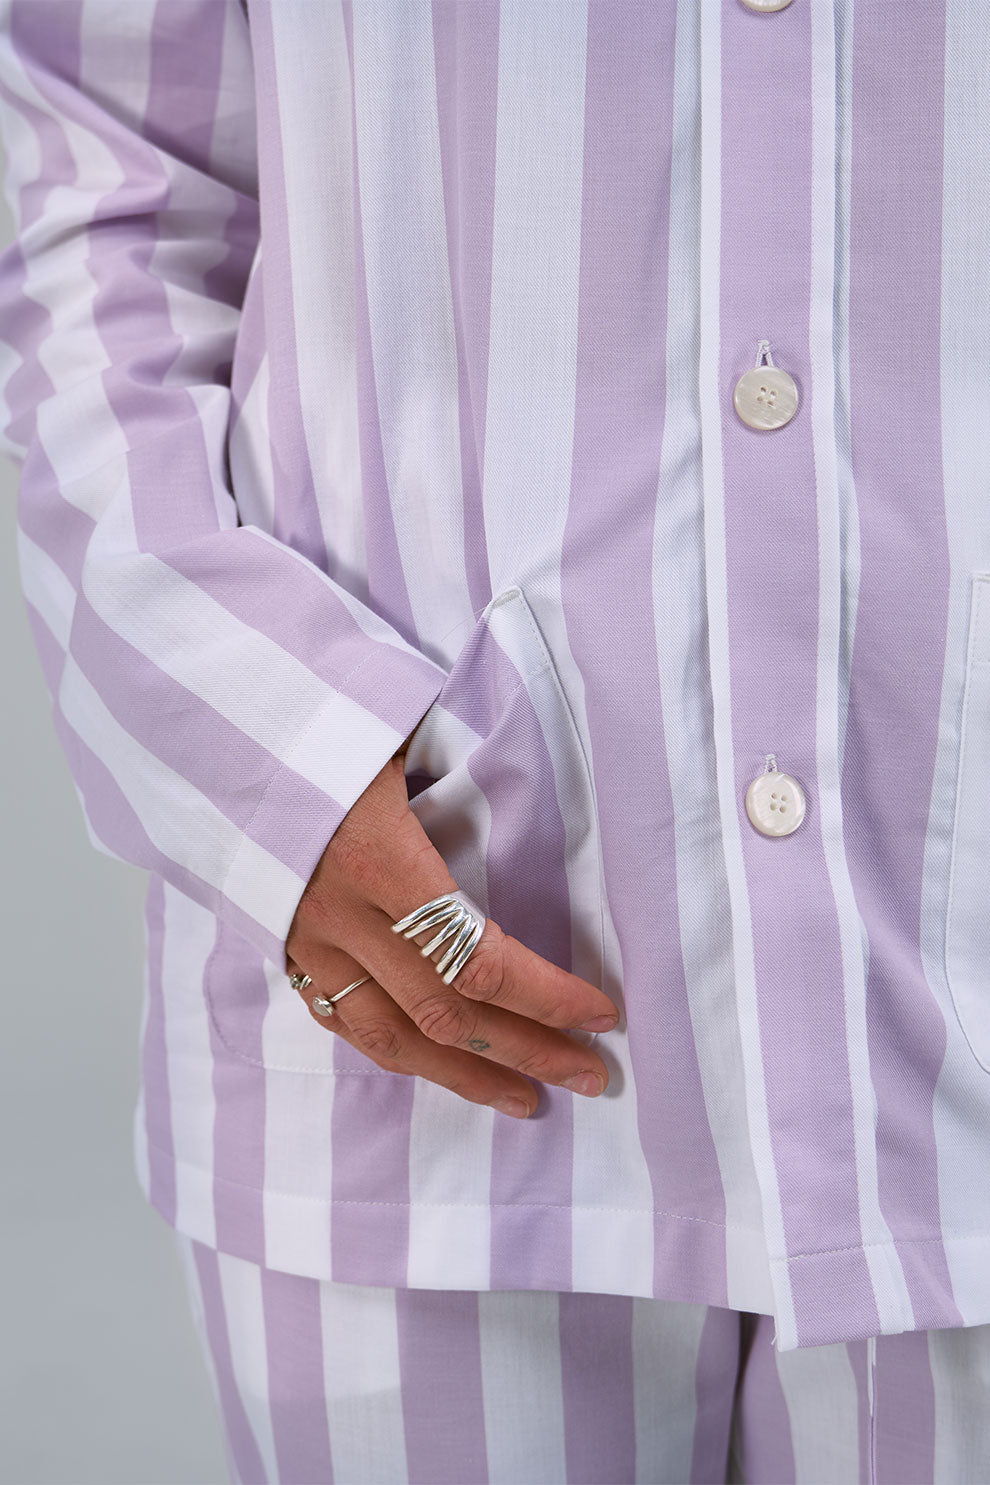 Uno Stripe Lavender & White Pyjama